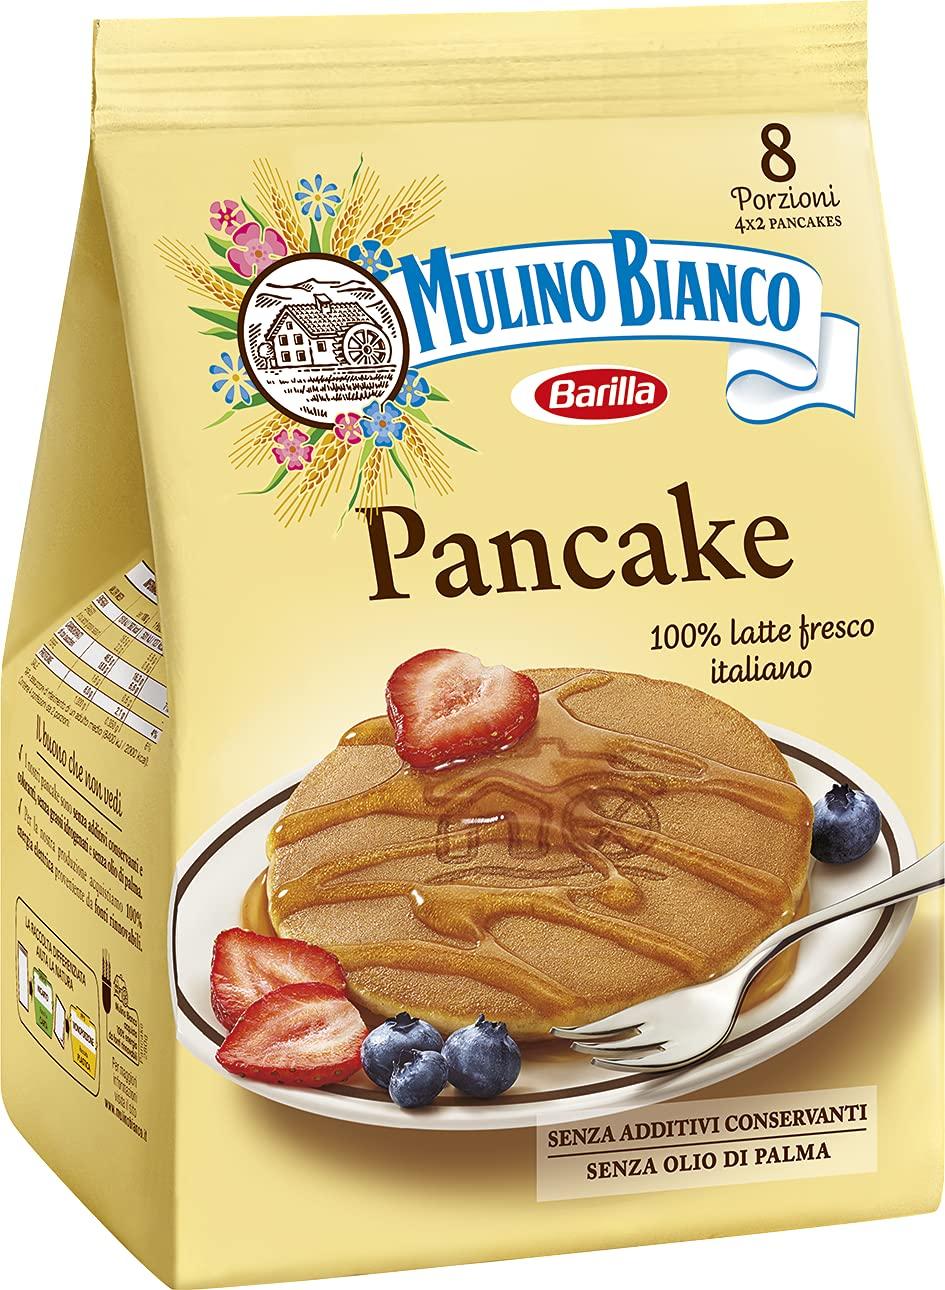 Mulino Bianco Pancake 280g [italian import]